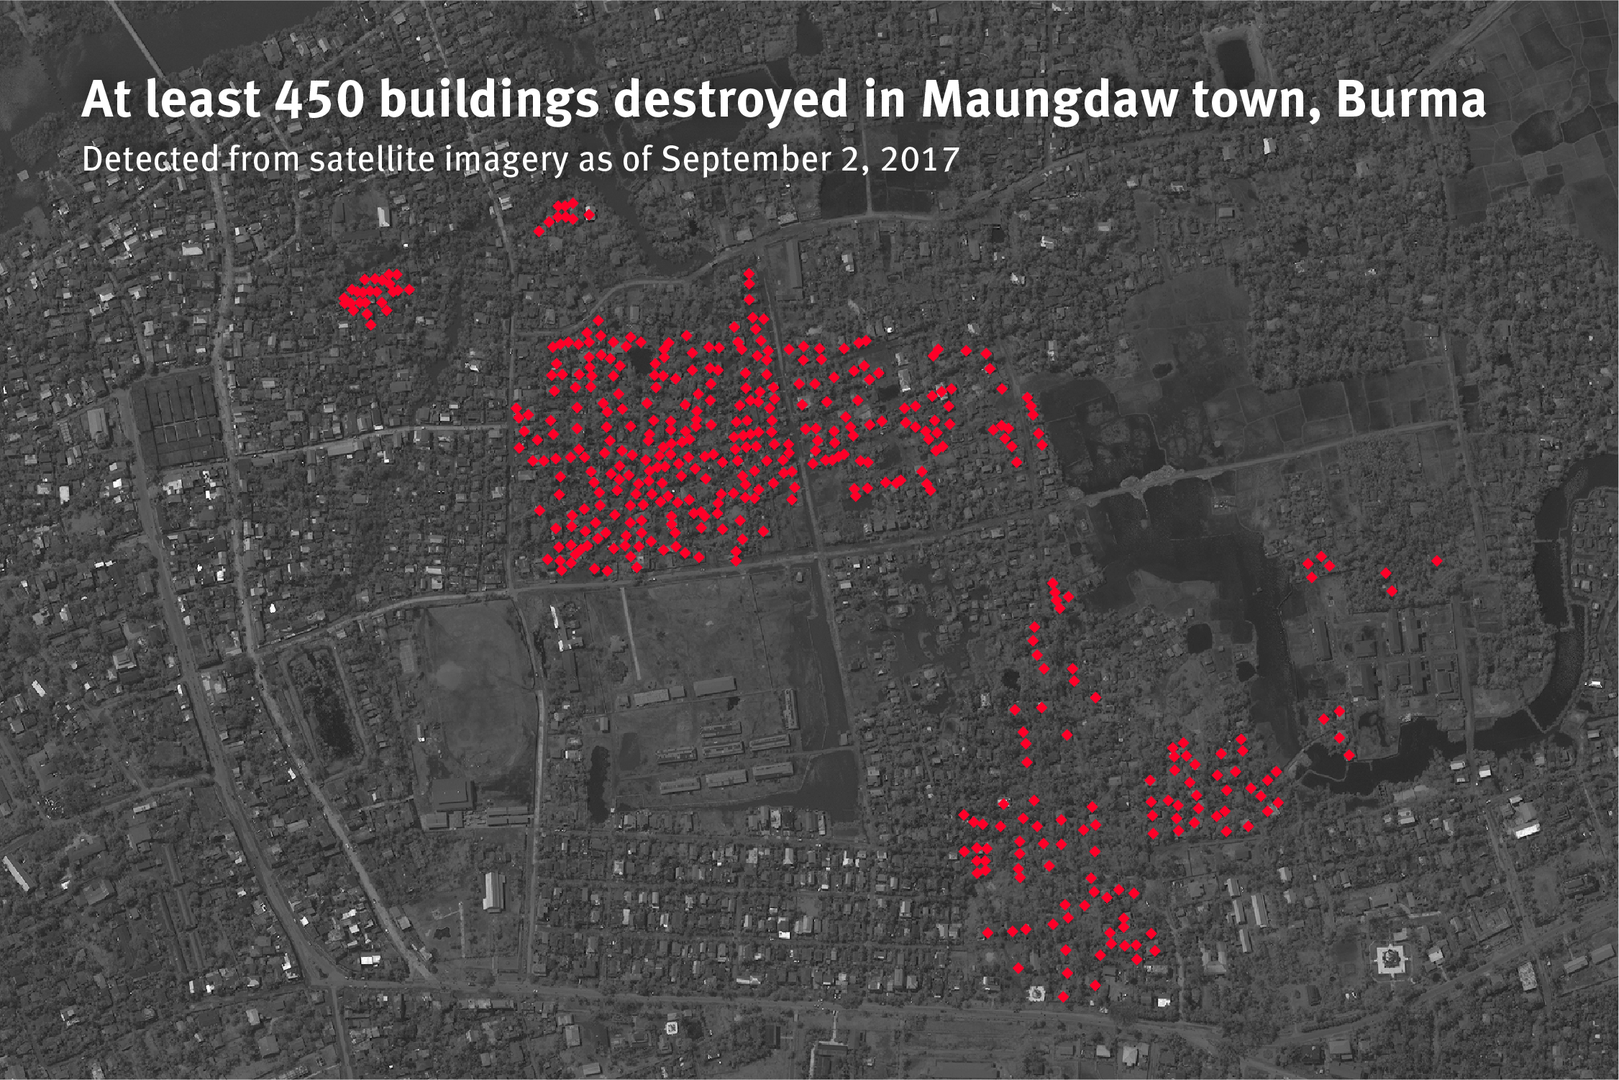 बर्मा के रखाइन राज्य में मोंगडॉ शहर के रोहिंग्या इलाके में अगस्त, 2017 में नष्ट कर दी गई 450 इमारतों के अवशेषों को दर्शाता नक्शा.